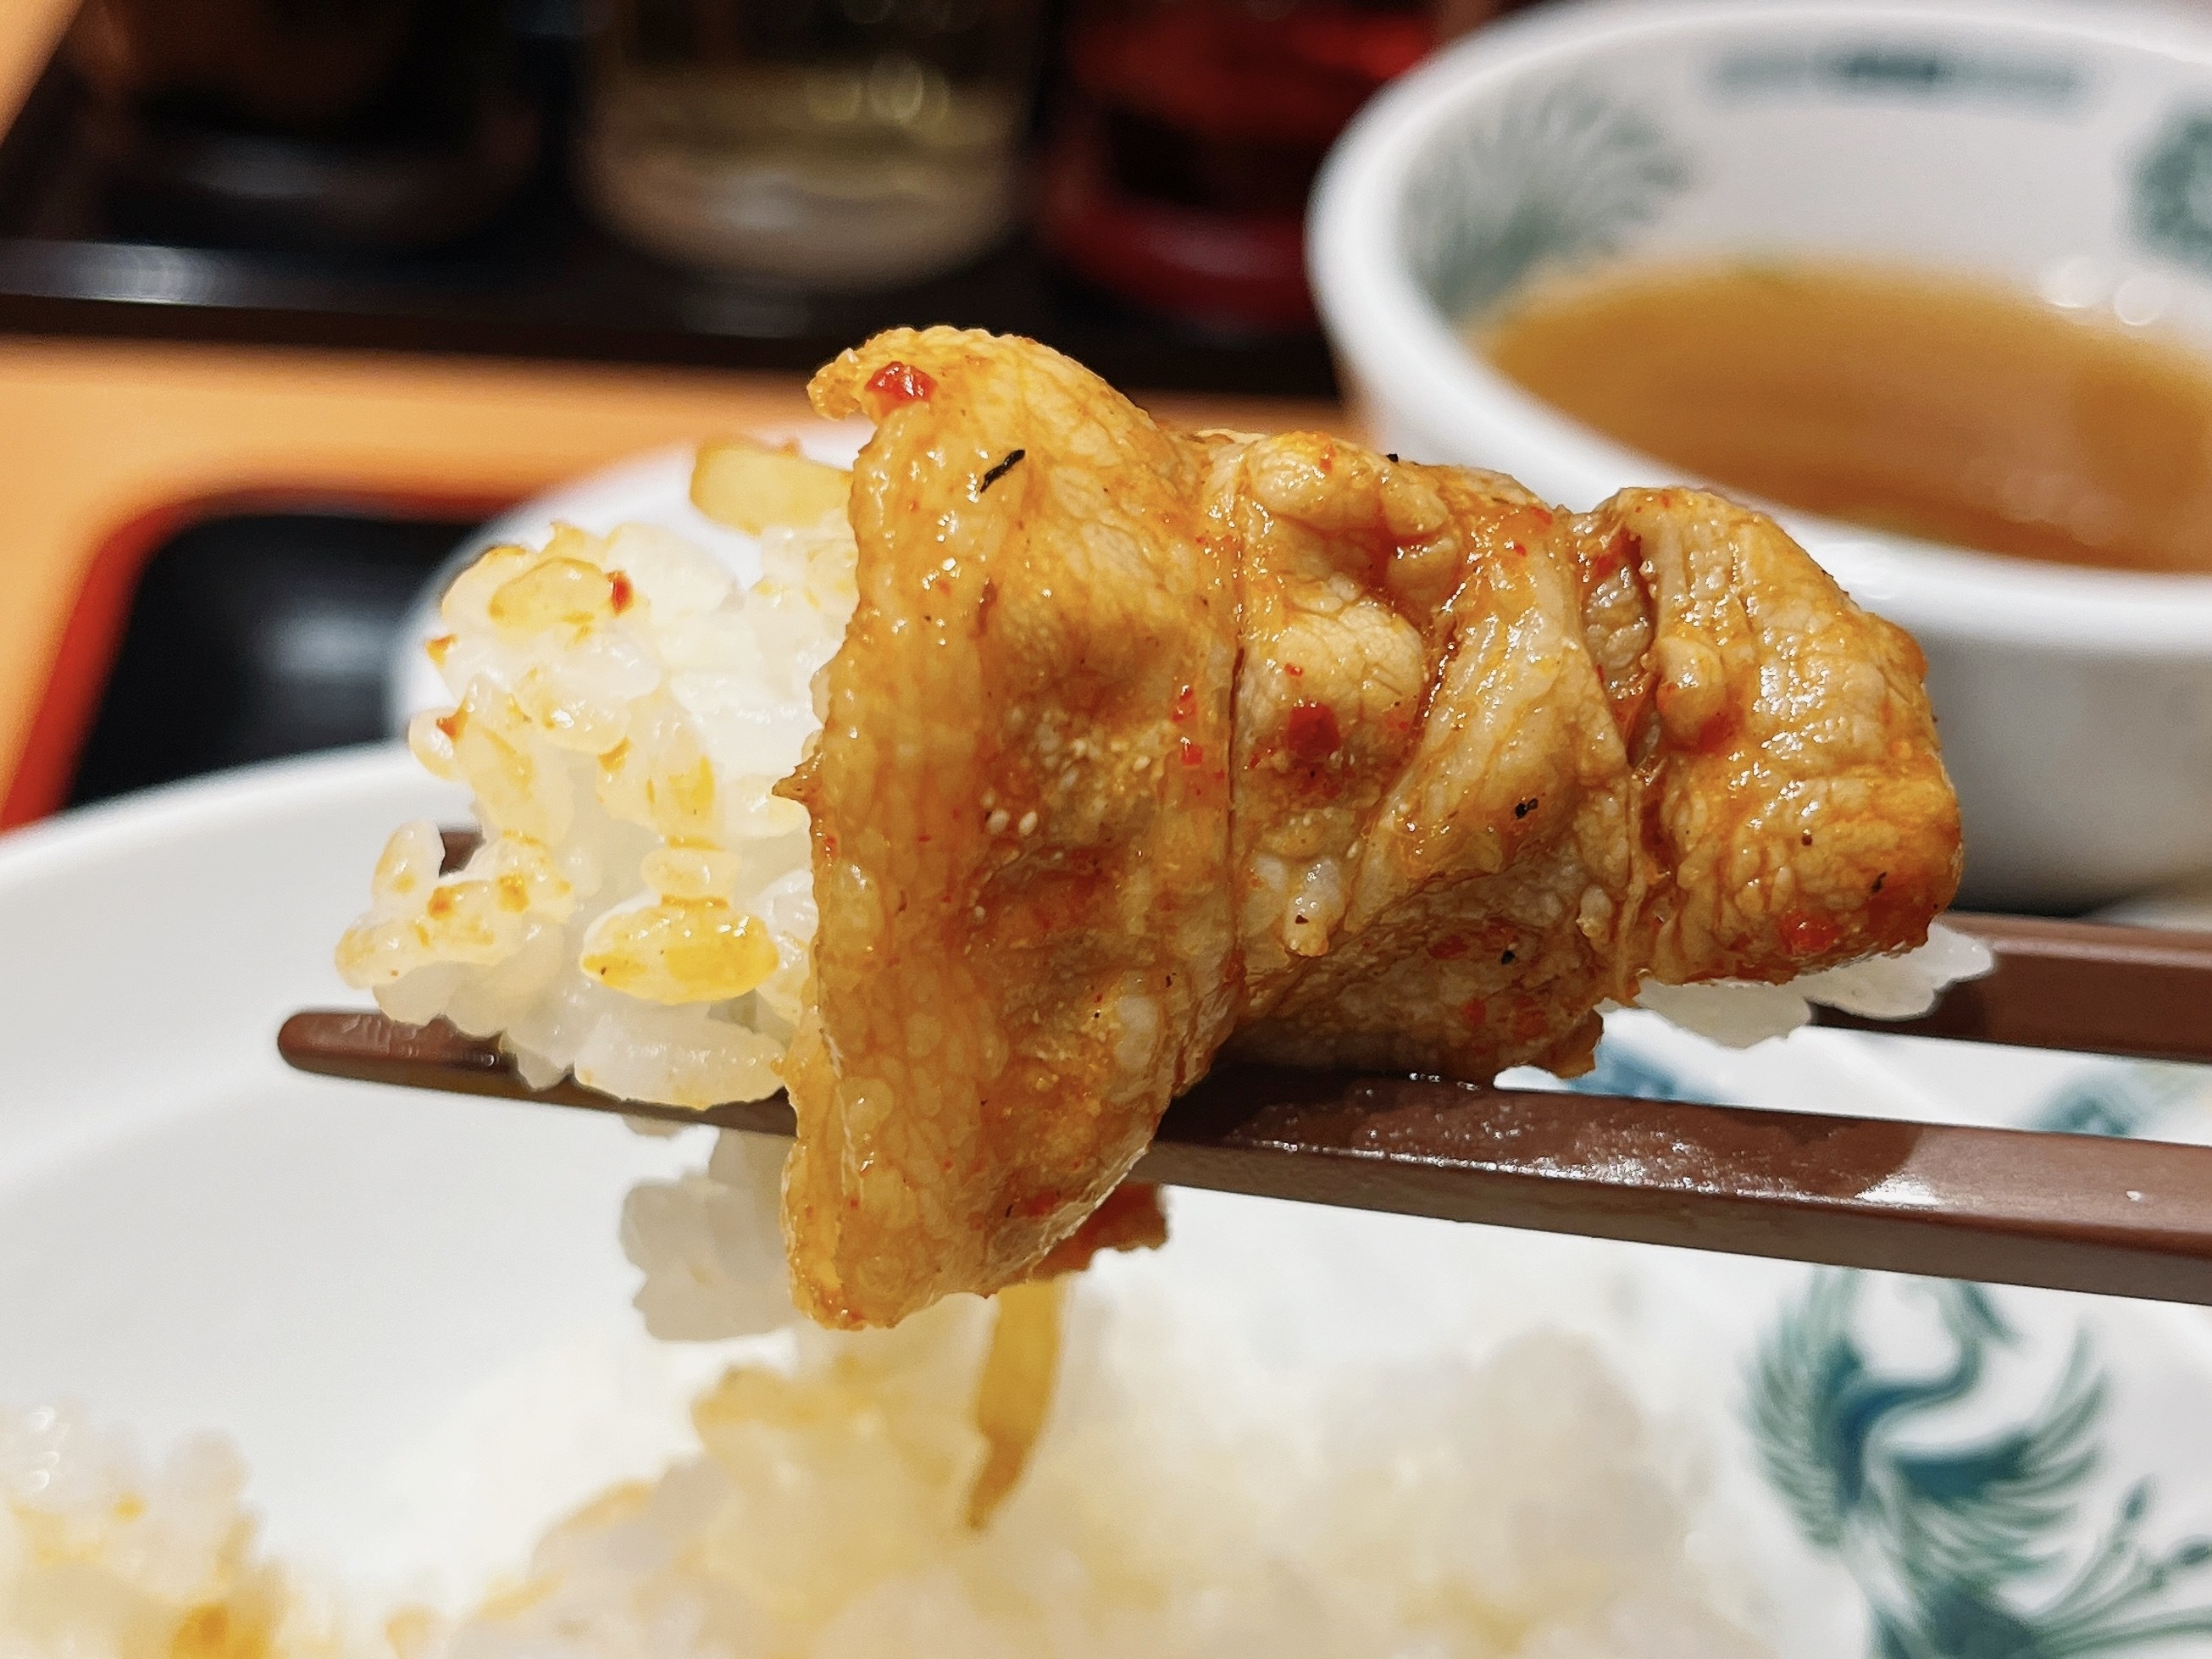 日高屋のオススメの定番メニュー「バクダン炒め定食」